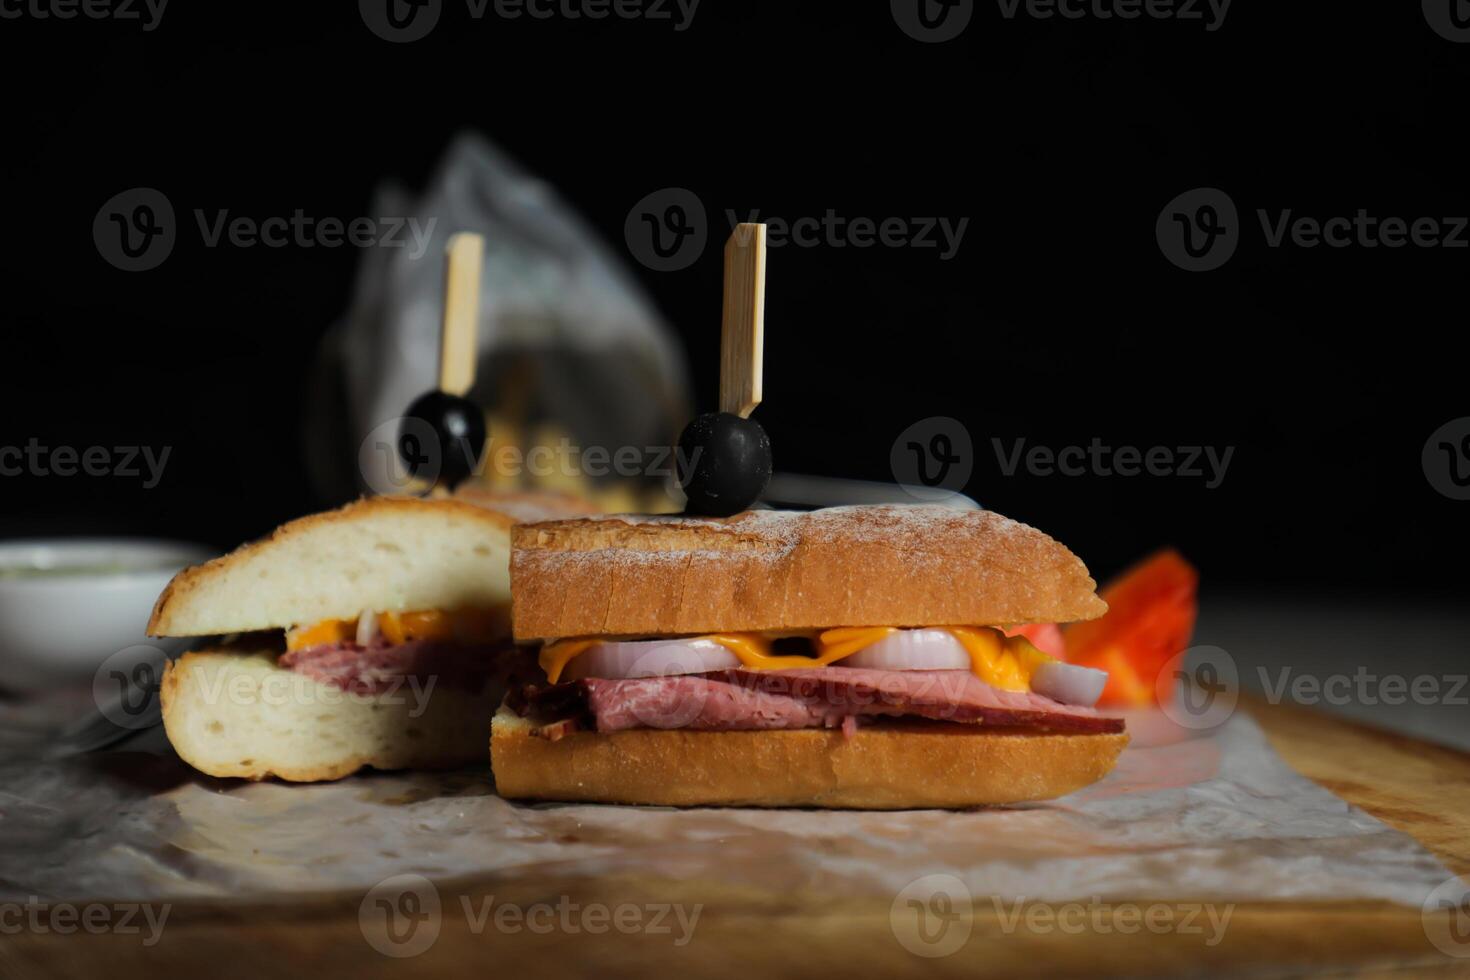 robusto asado carne de vaca queso Cheddar emparedado con mayonesa inmersión con papas fritas servido en de madera tablero aislado en servilleta lado ver de desayuno comida foto